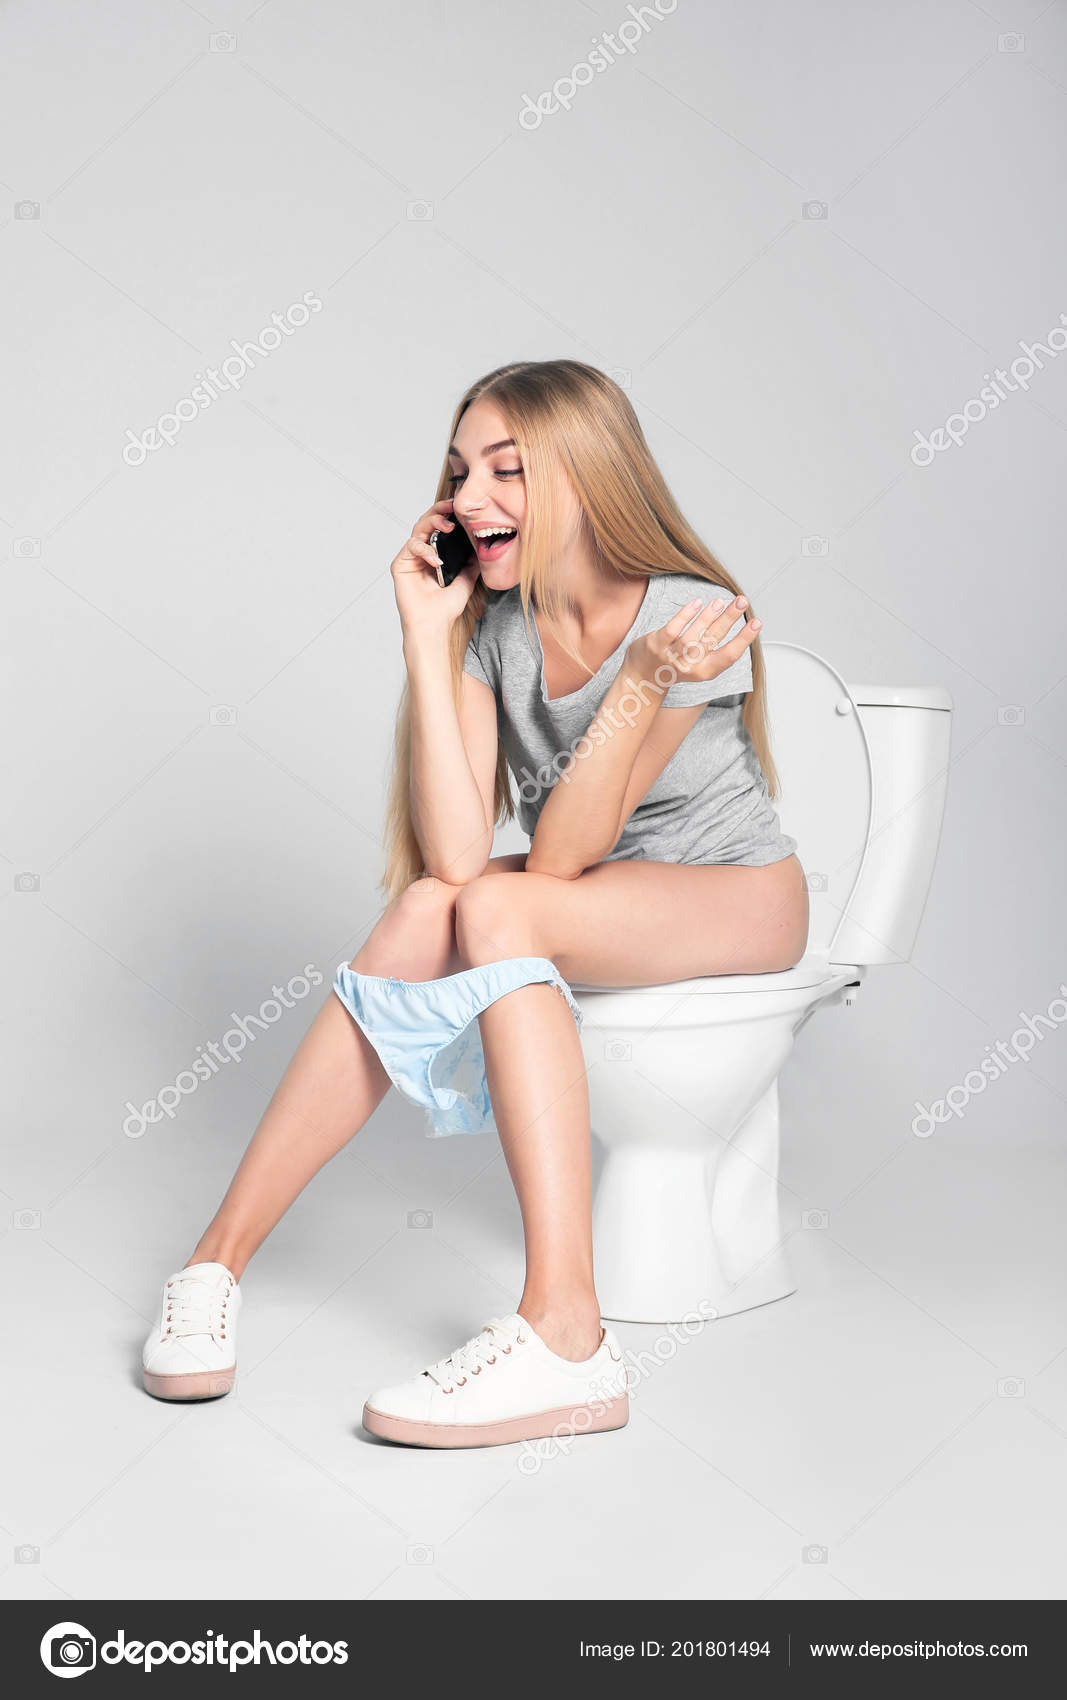 Сидеть в телефоне в туалете. Девочки сидят на унитазе. Женщина сидит на унитазе. Фотомодели на унитазе. Девочка на унитазе.